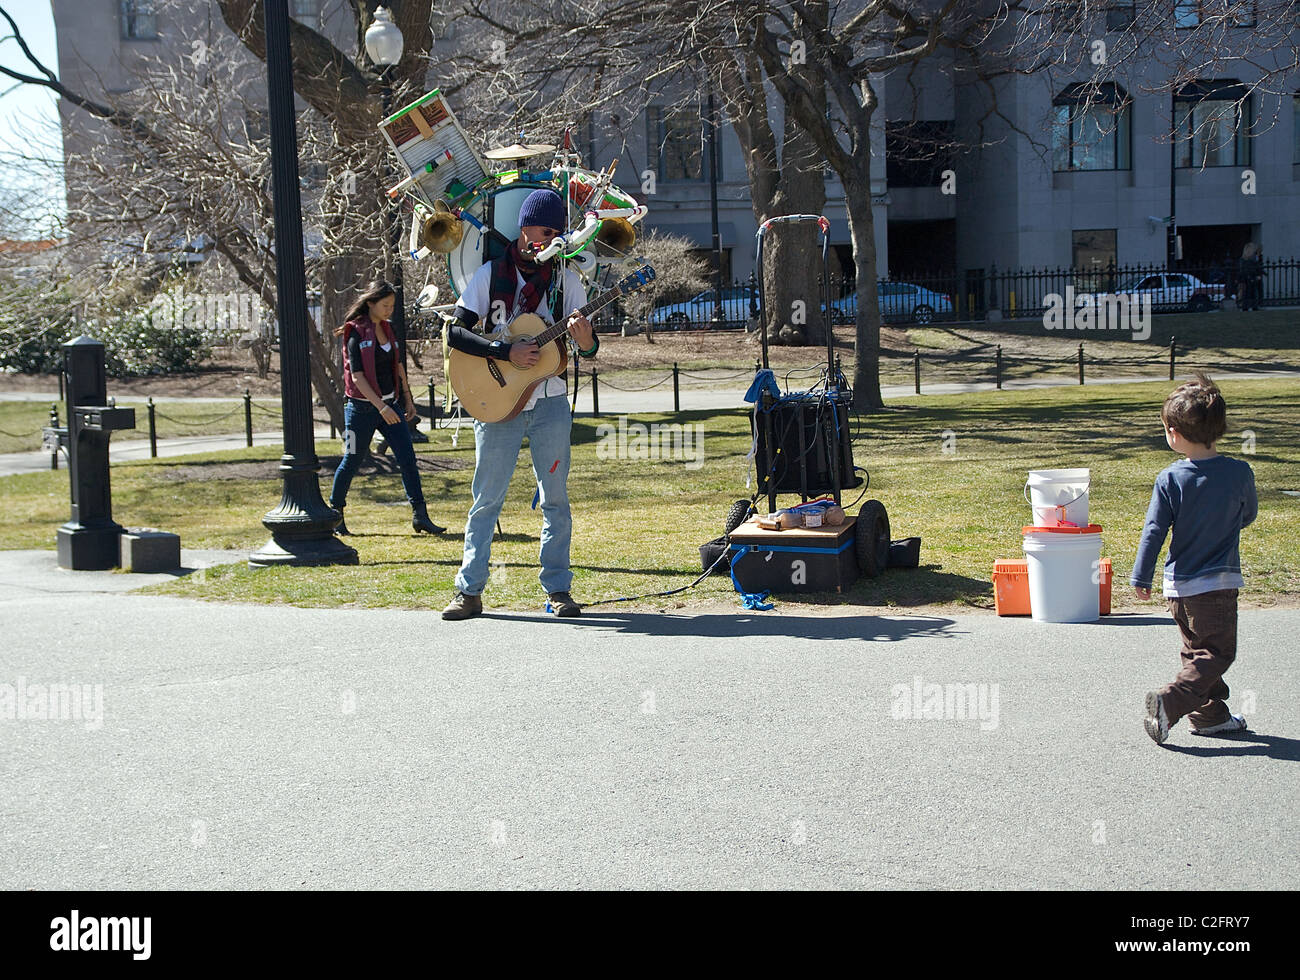 Un garçon marche à travers un parc oriente son regard vers un homme jouant avec une guitare et de nombreux instruments fixé à son retour Banque D'Images